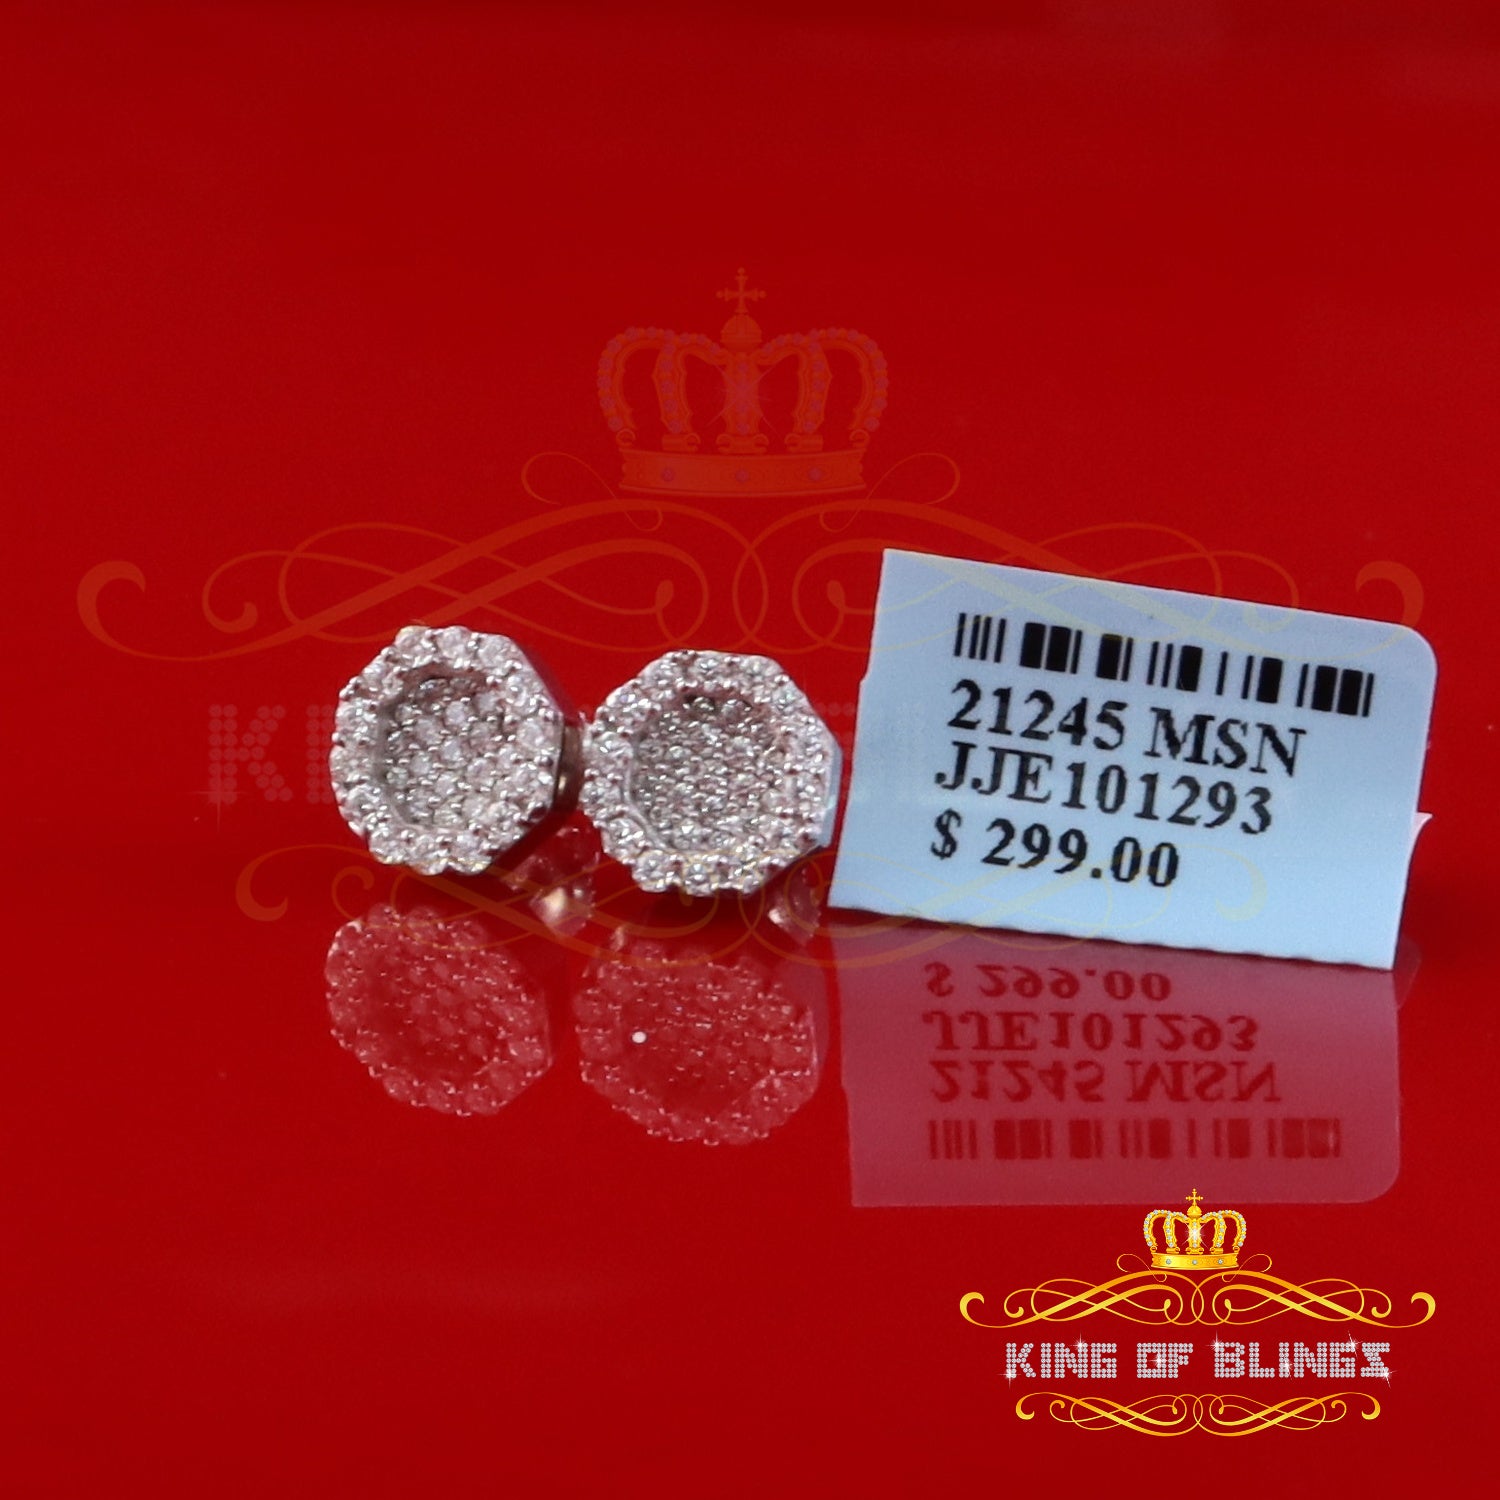 King of Bling's 925 White Silver 0.66ct VVS 'D' Moissanite Octagon Stud Earring Men's/Womens King of Blings